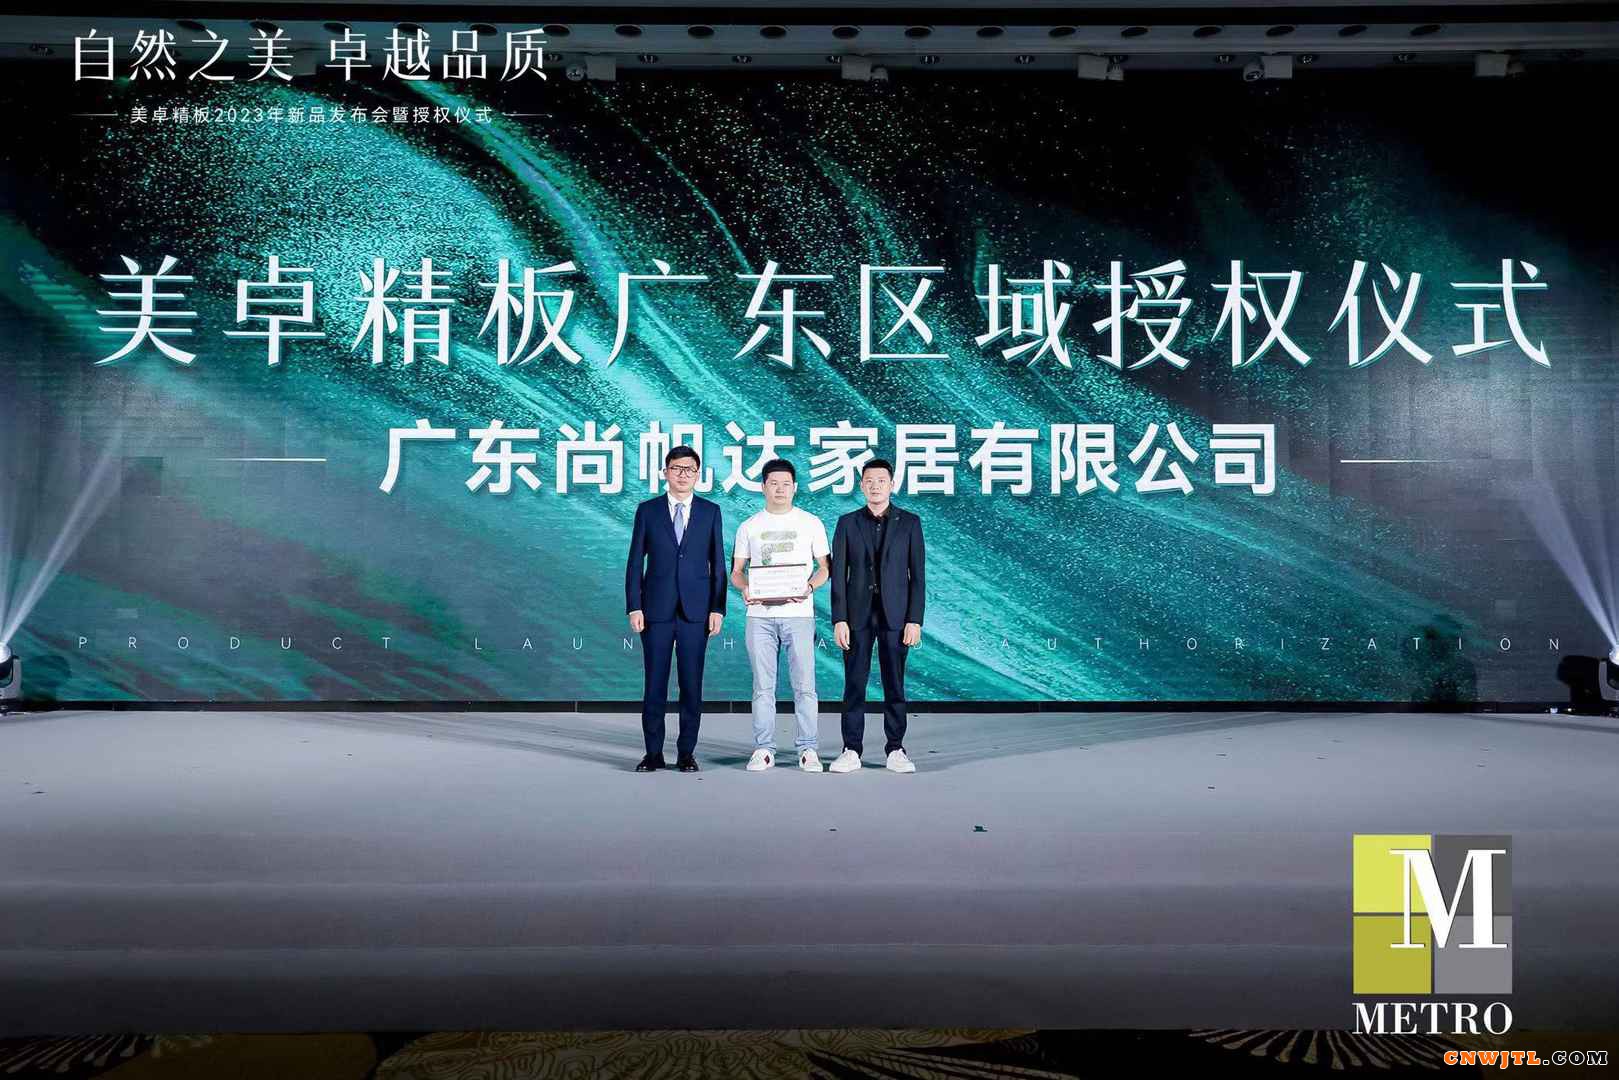 MetroMFC美卓精板5G时代1.0系列新品重磅首发 引领中国美好人居新趋势 涂料在线,coatingol.com